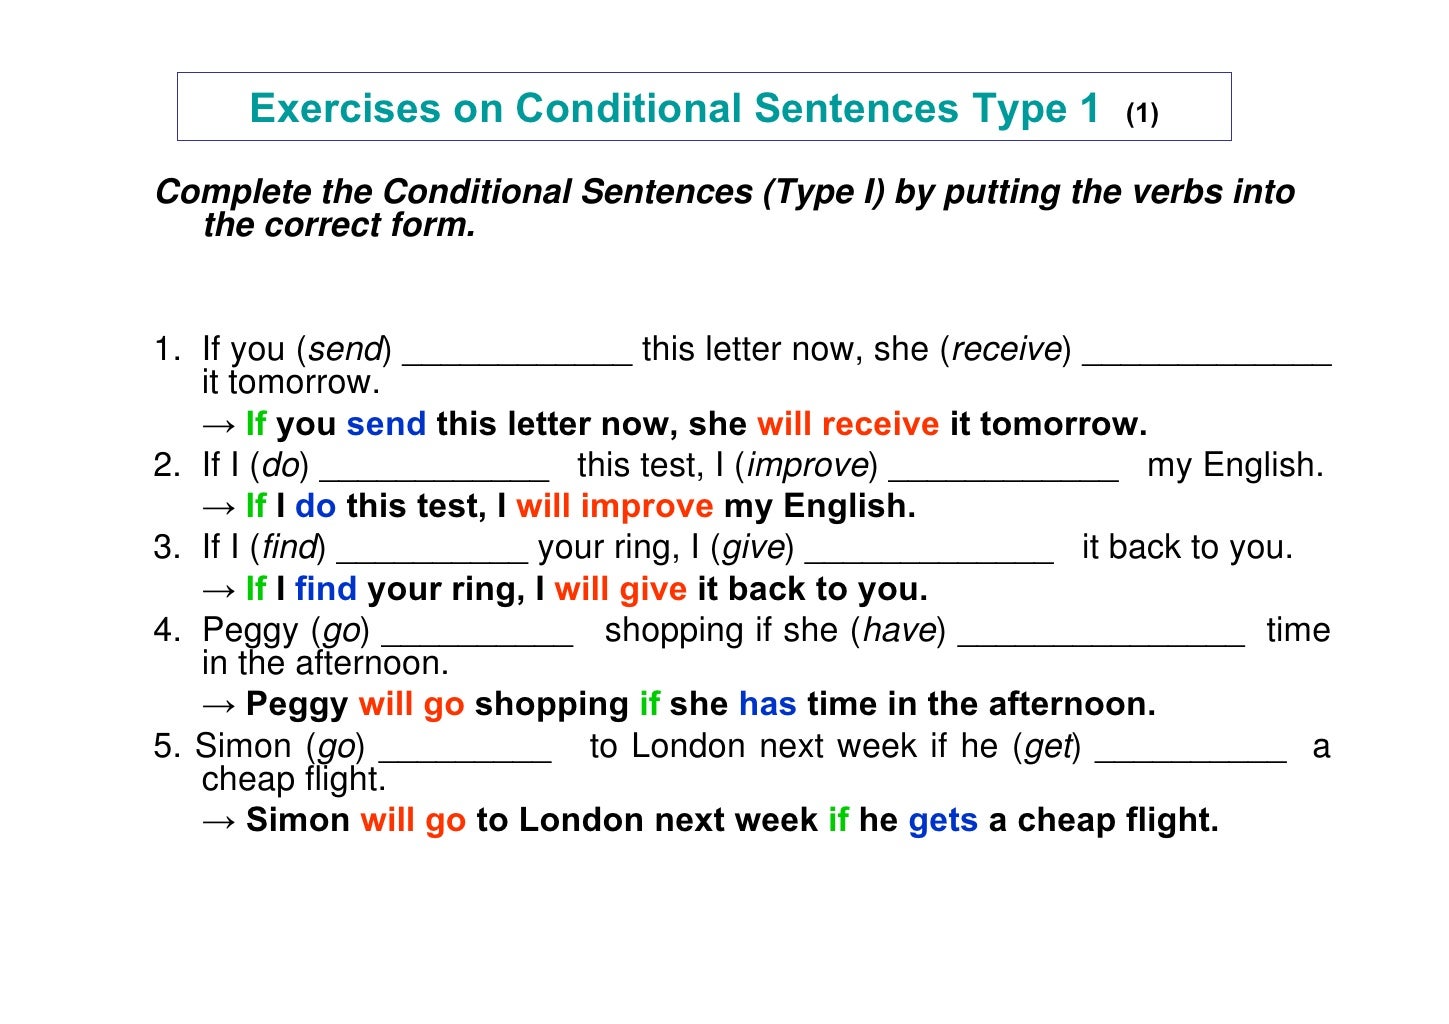 English sentence test. Conditionals в английском exercises. Типы условных предложений в английском языке упражнения. Условные предложения (conditional sentences). Условные предложения в английском упражнения.